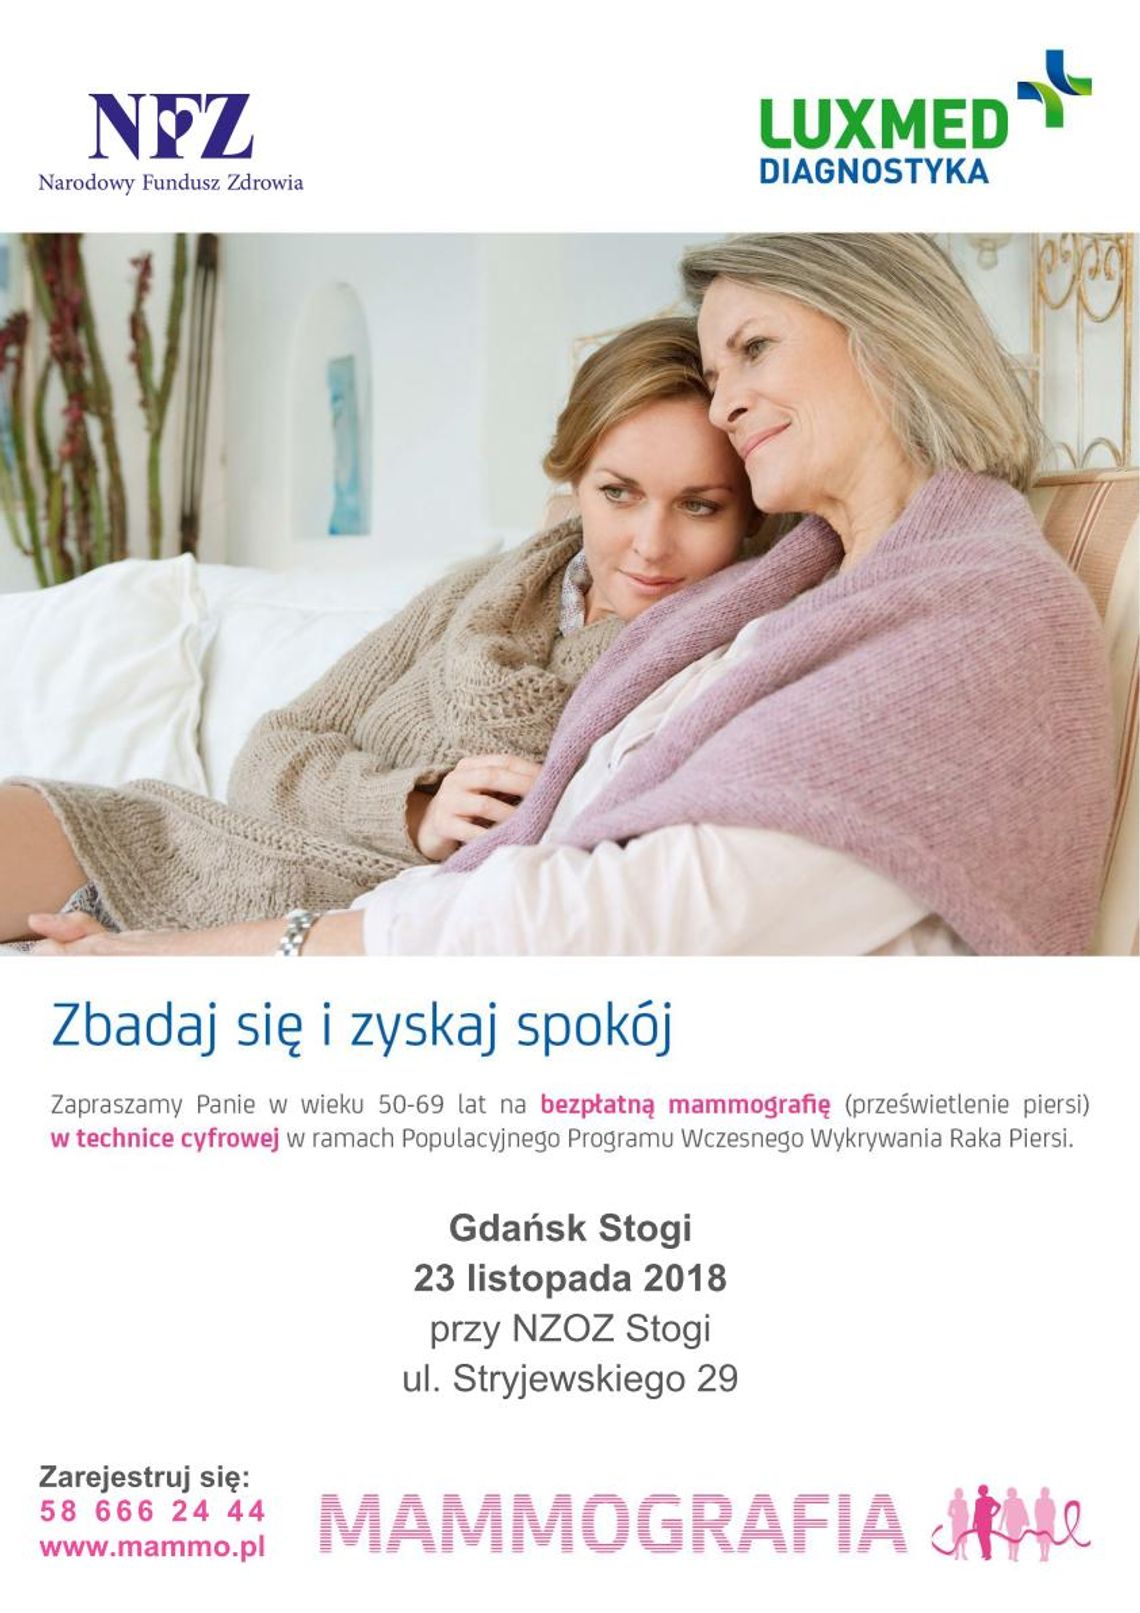 Bezpłatne badania mammograficzne dla kobiet w Gdańsku (AKTUALIZACJA)